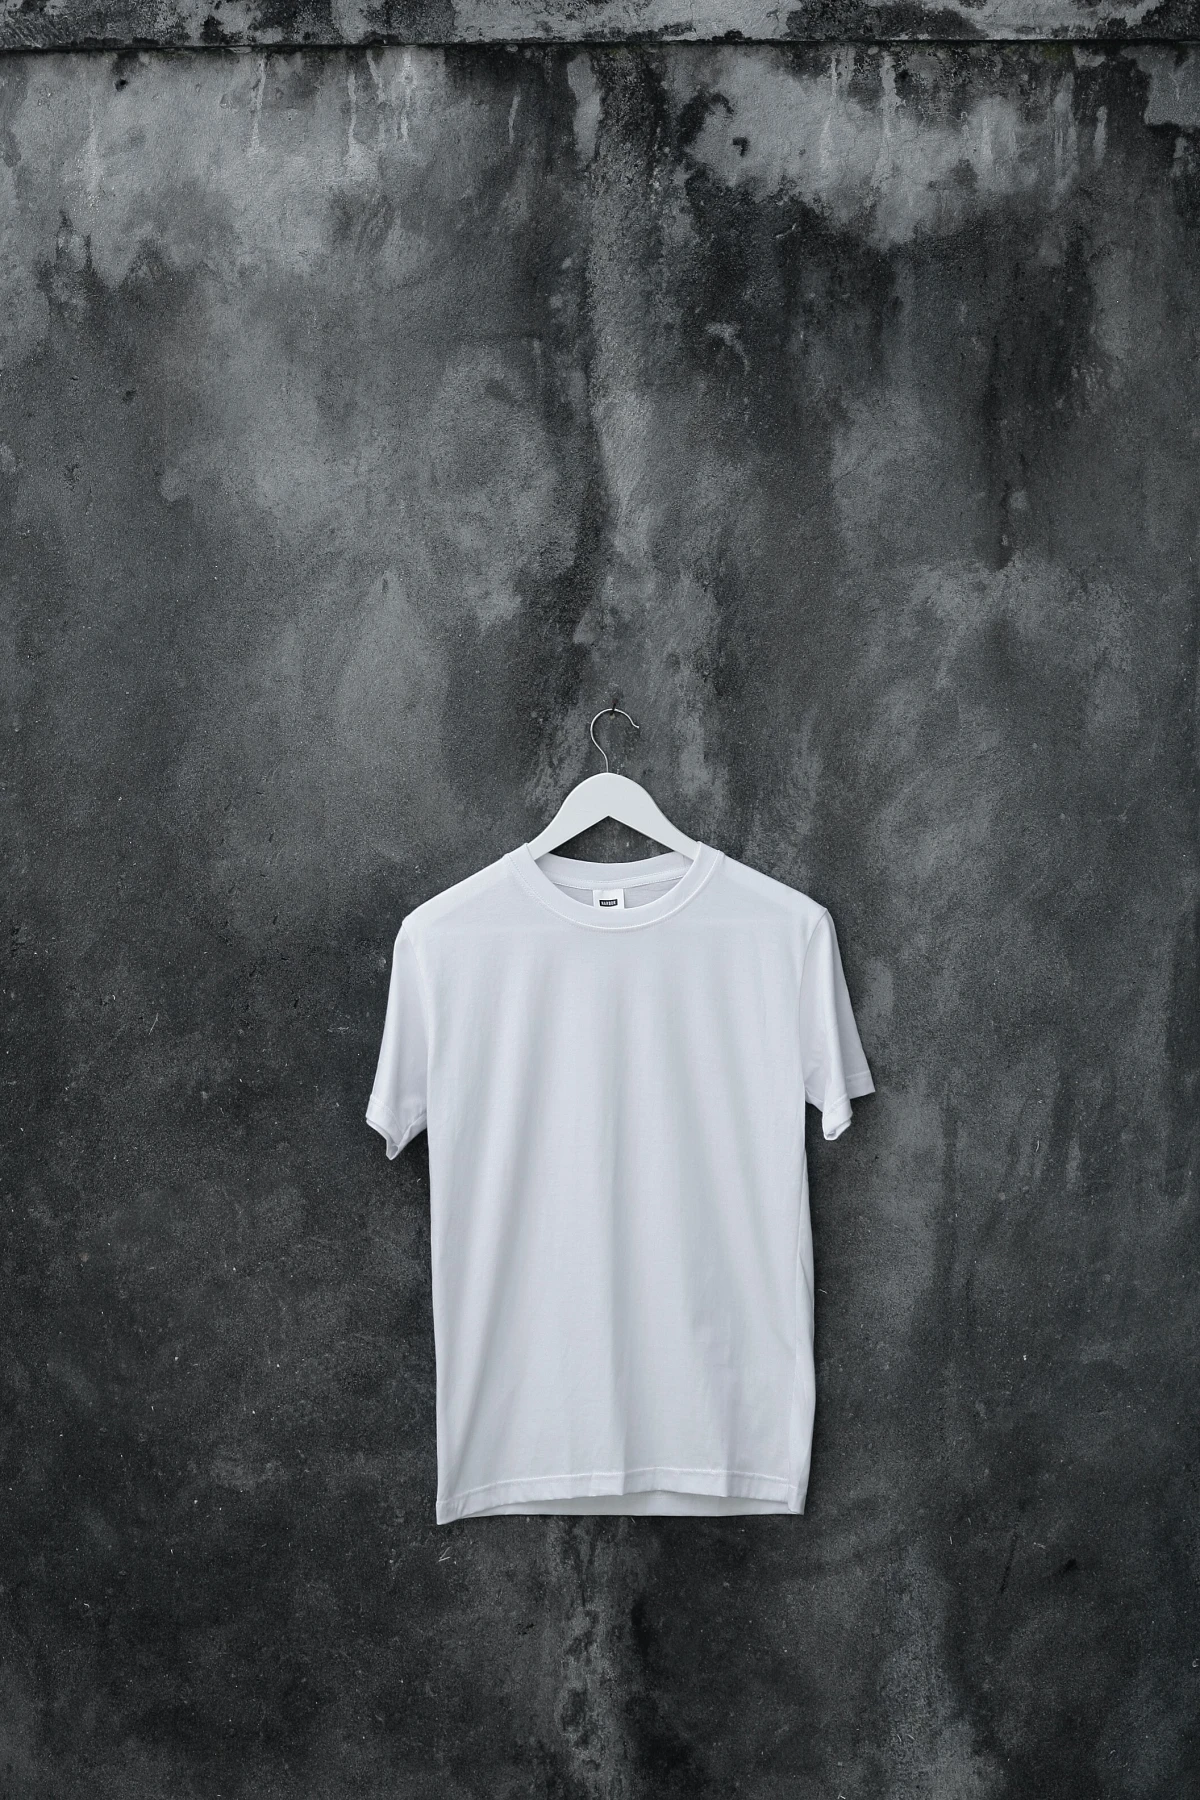 plain white t shirt on hanger